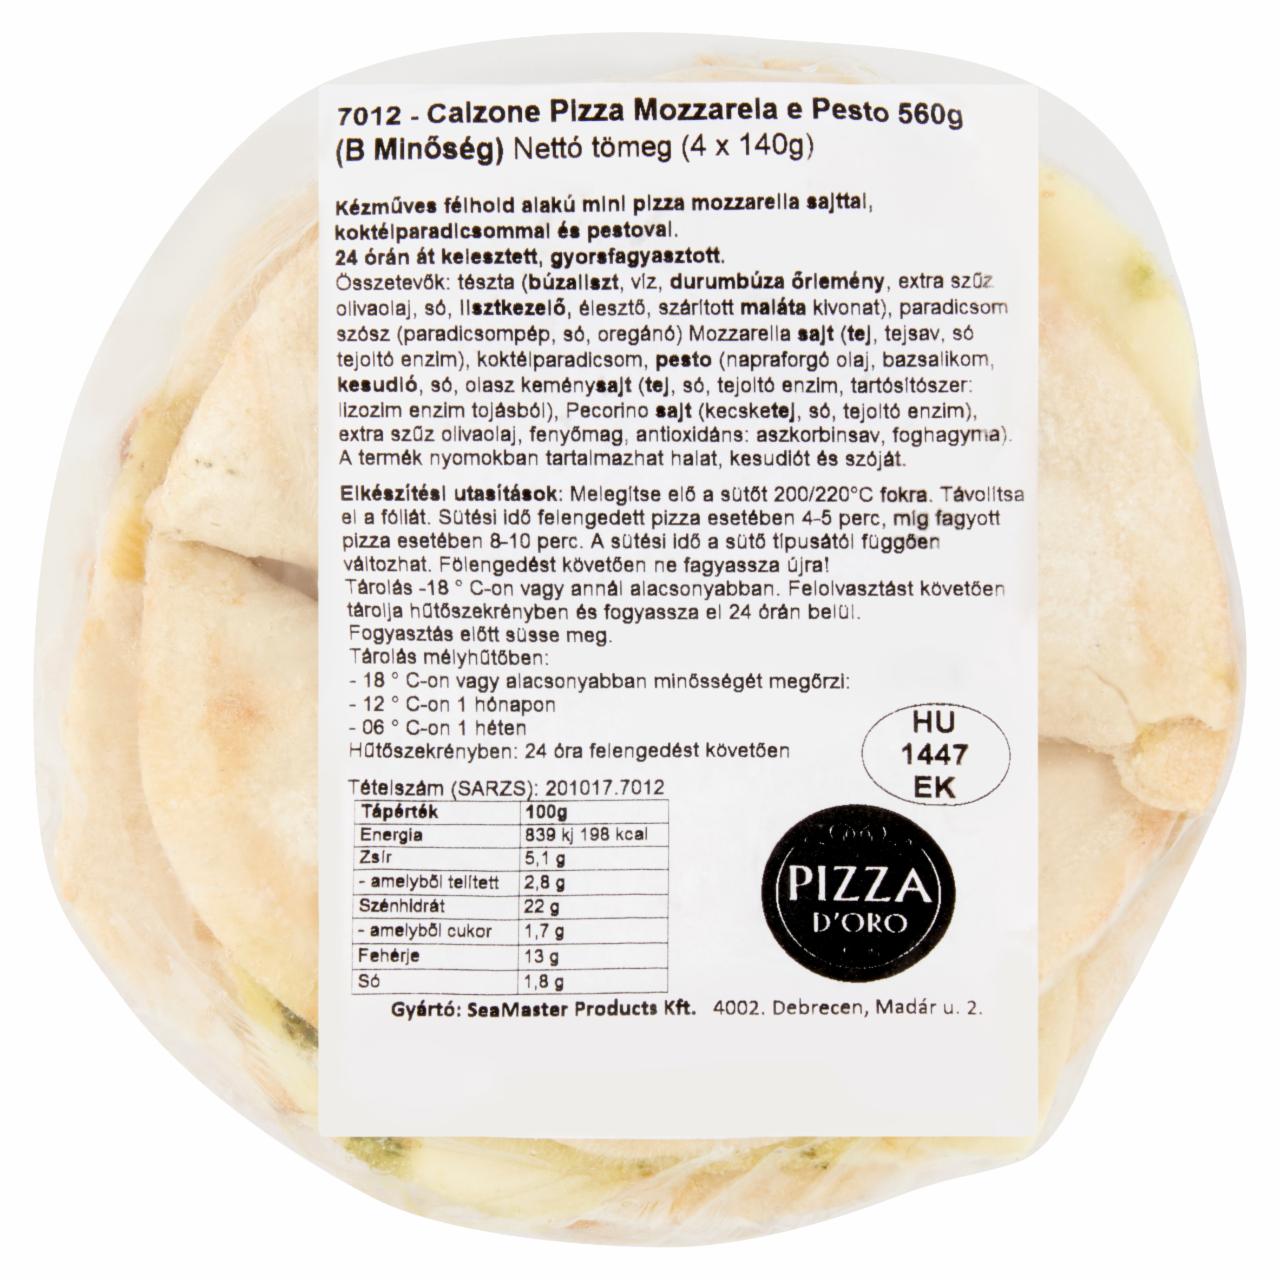 Képek - Pizza D'Oro Calzone gyorsfagyasztott, kézműves mini pizza pestóval 4 db 560 g